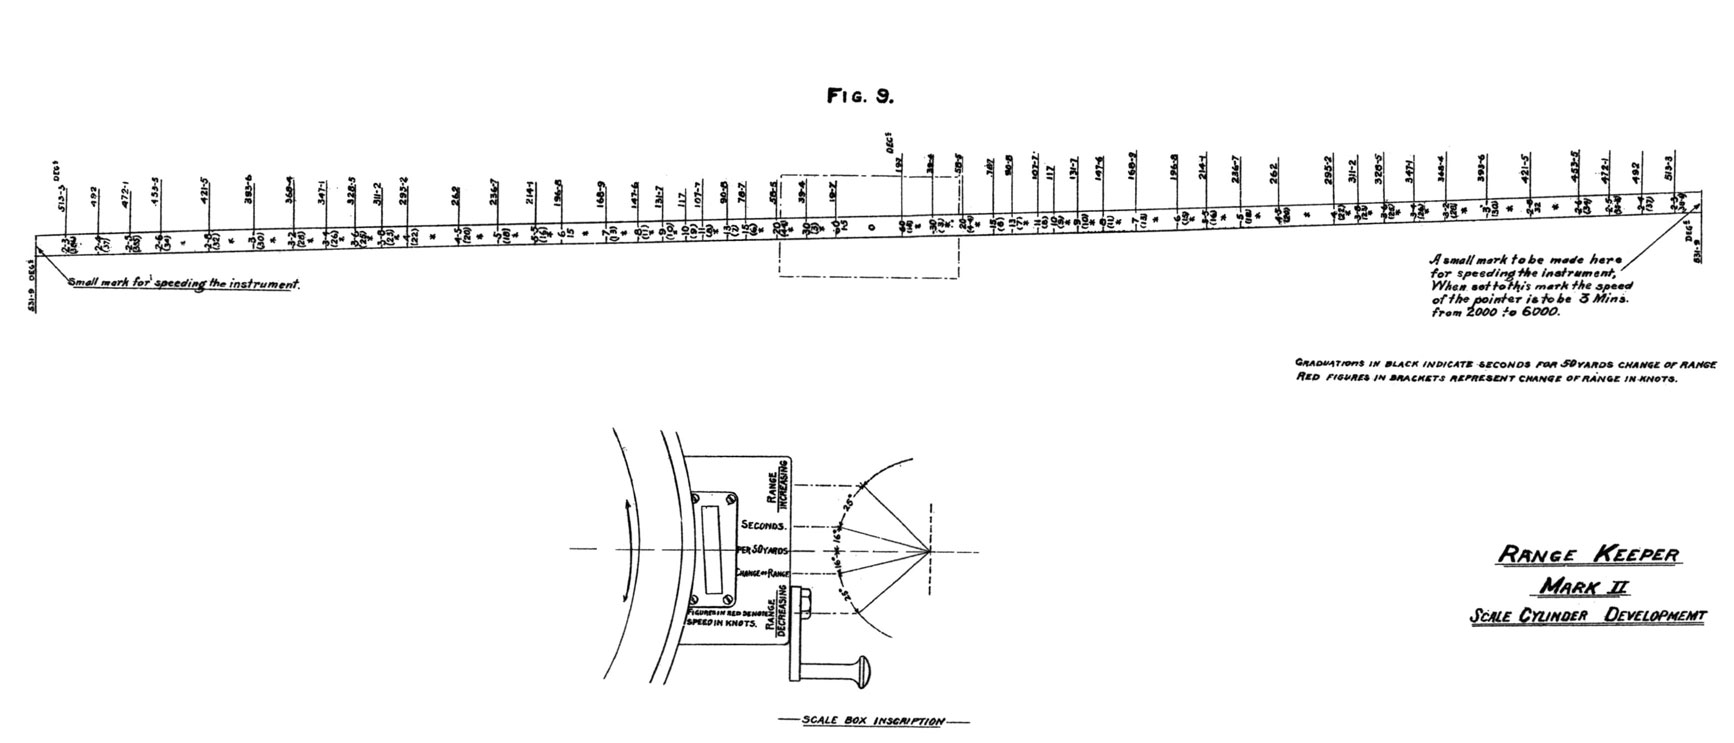 Figure 9. Range Keeper Mark II Scale Cylinder Development